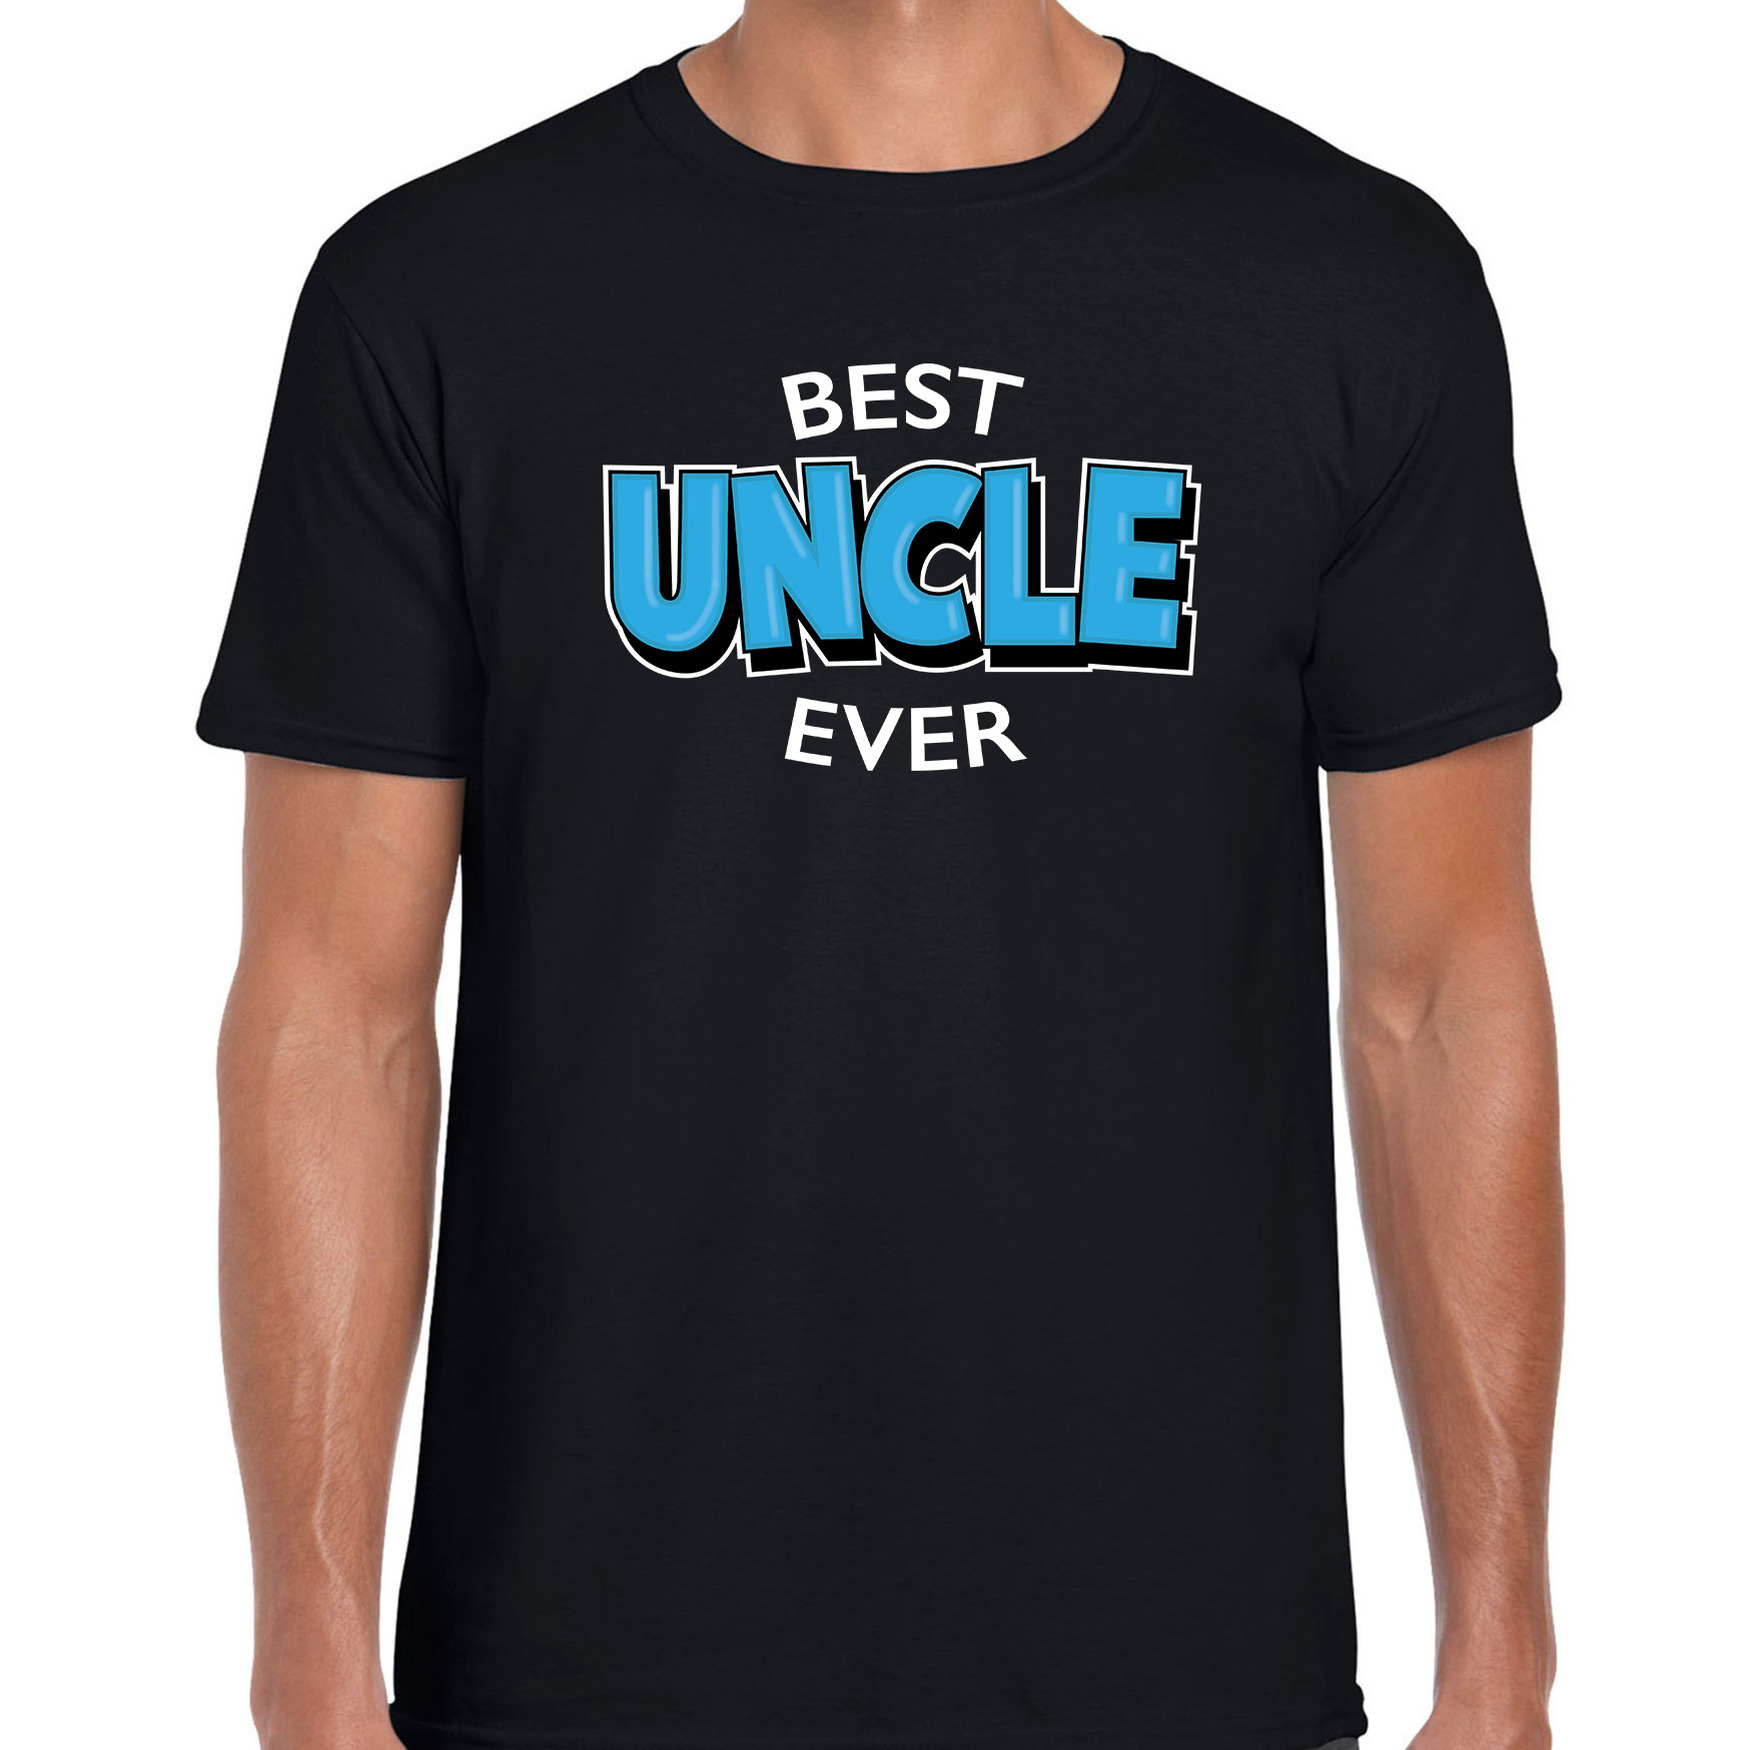 Best uncle ever-beste oom ooit cadeau t-shirt zwart voor heren